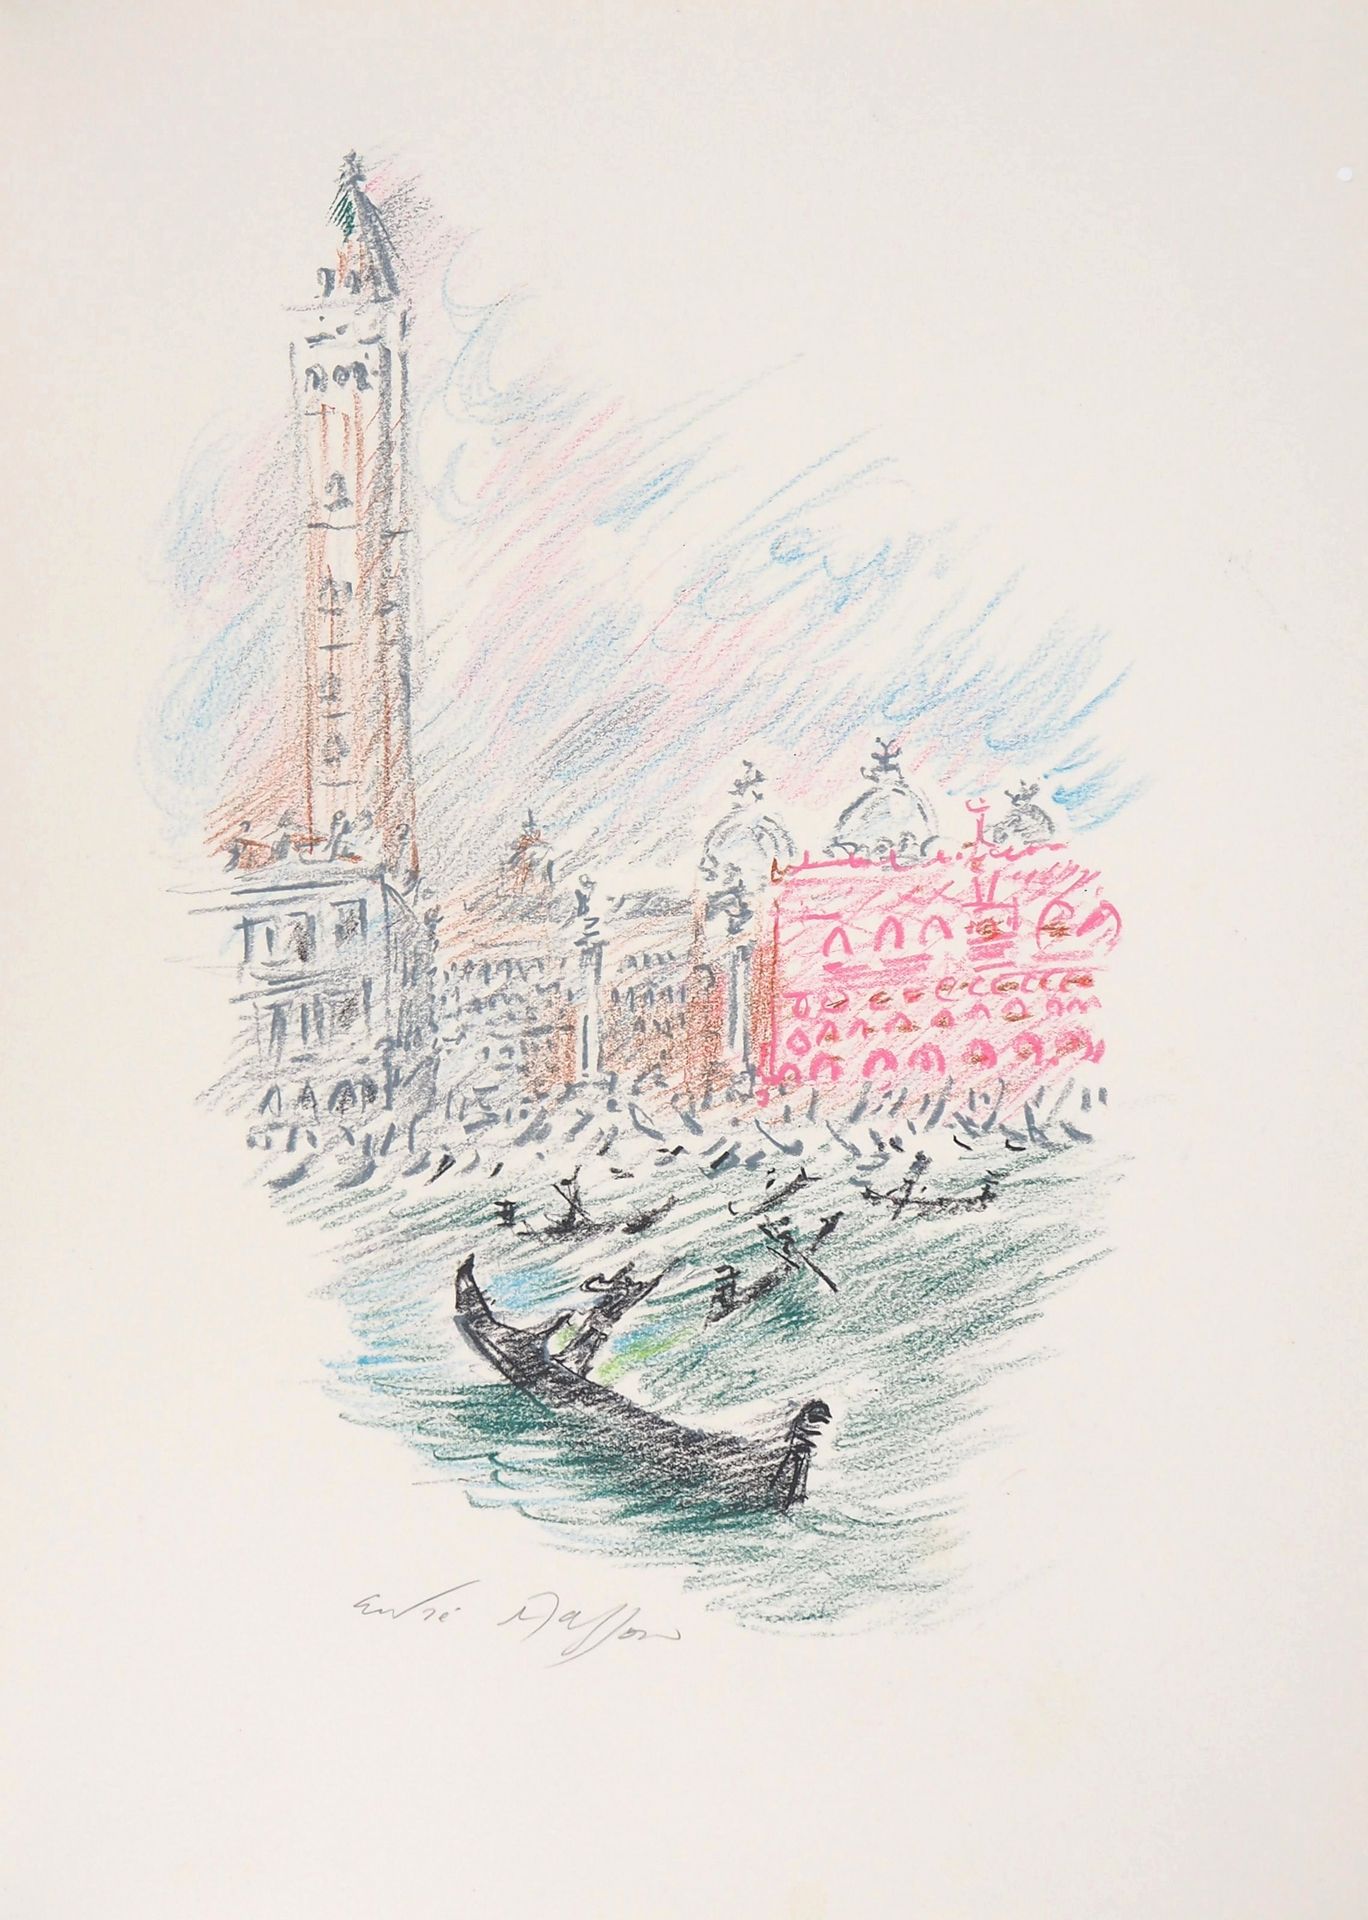 André MASSON André MASSON

Venise, Les Gondoles devant le Bassin de Saint-Marc

&hellip;